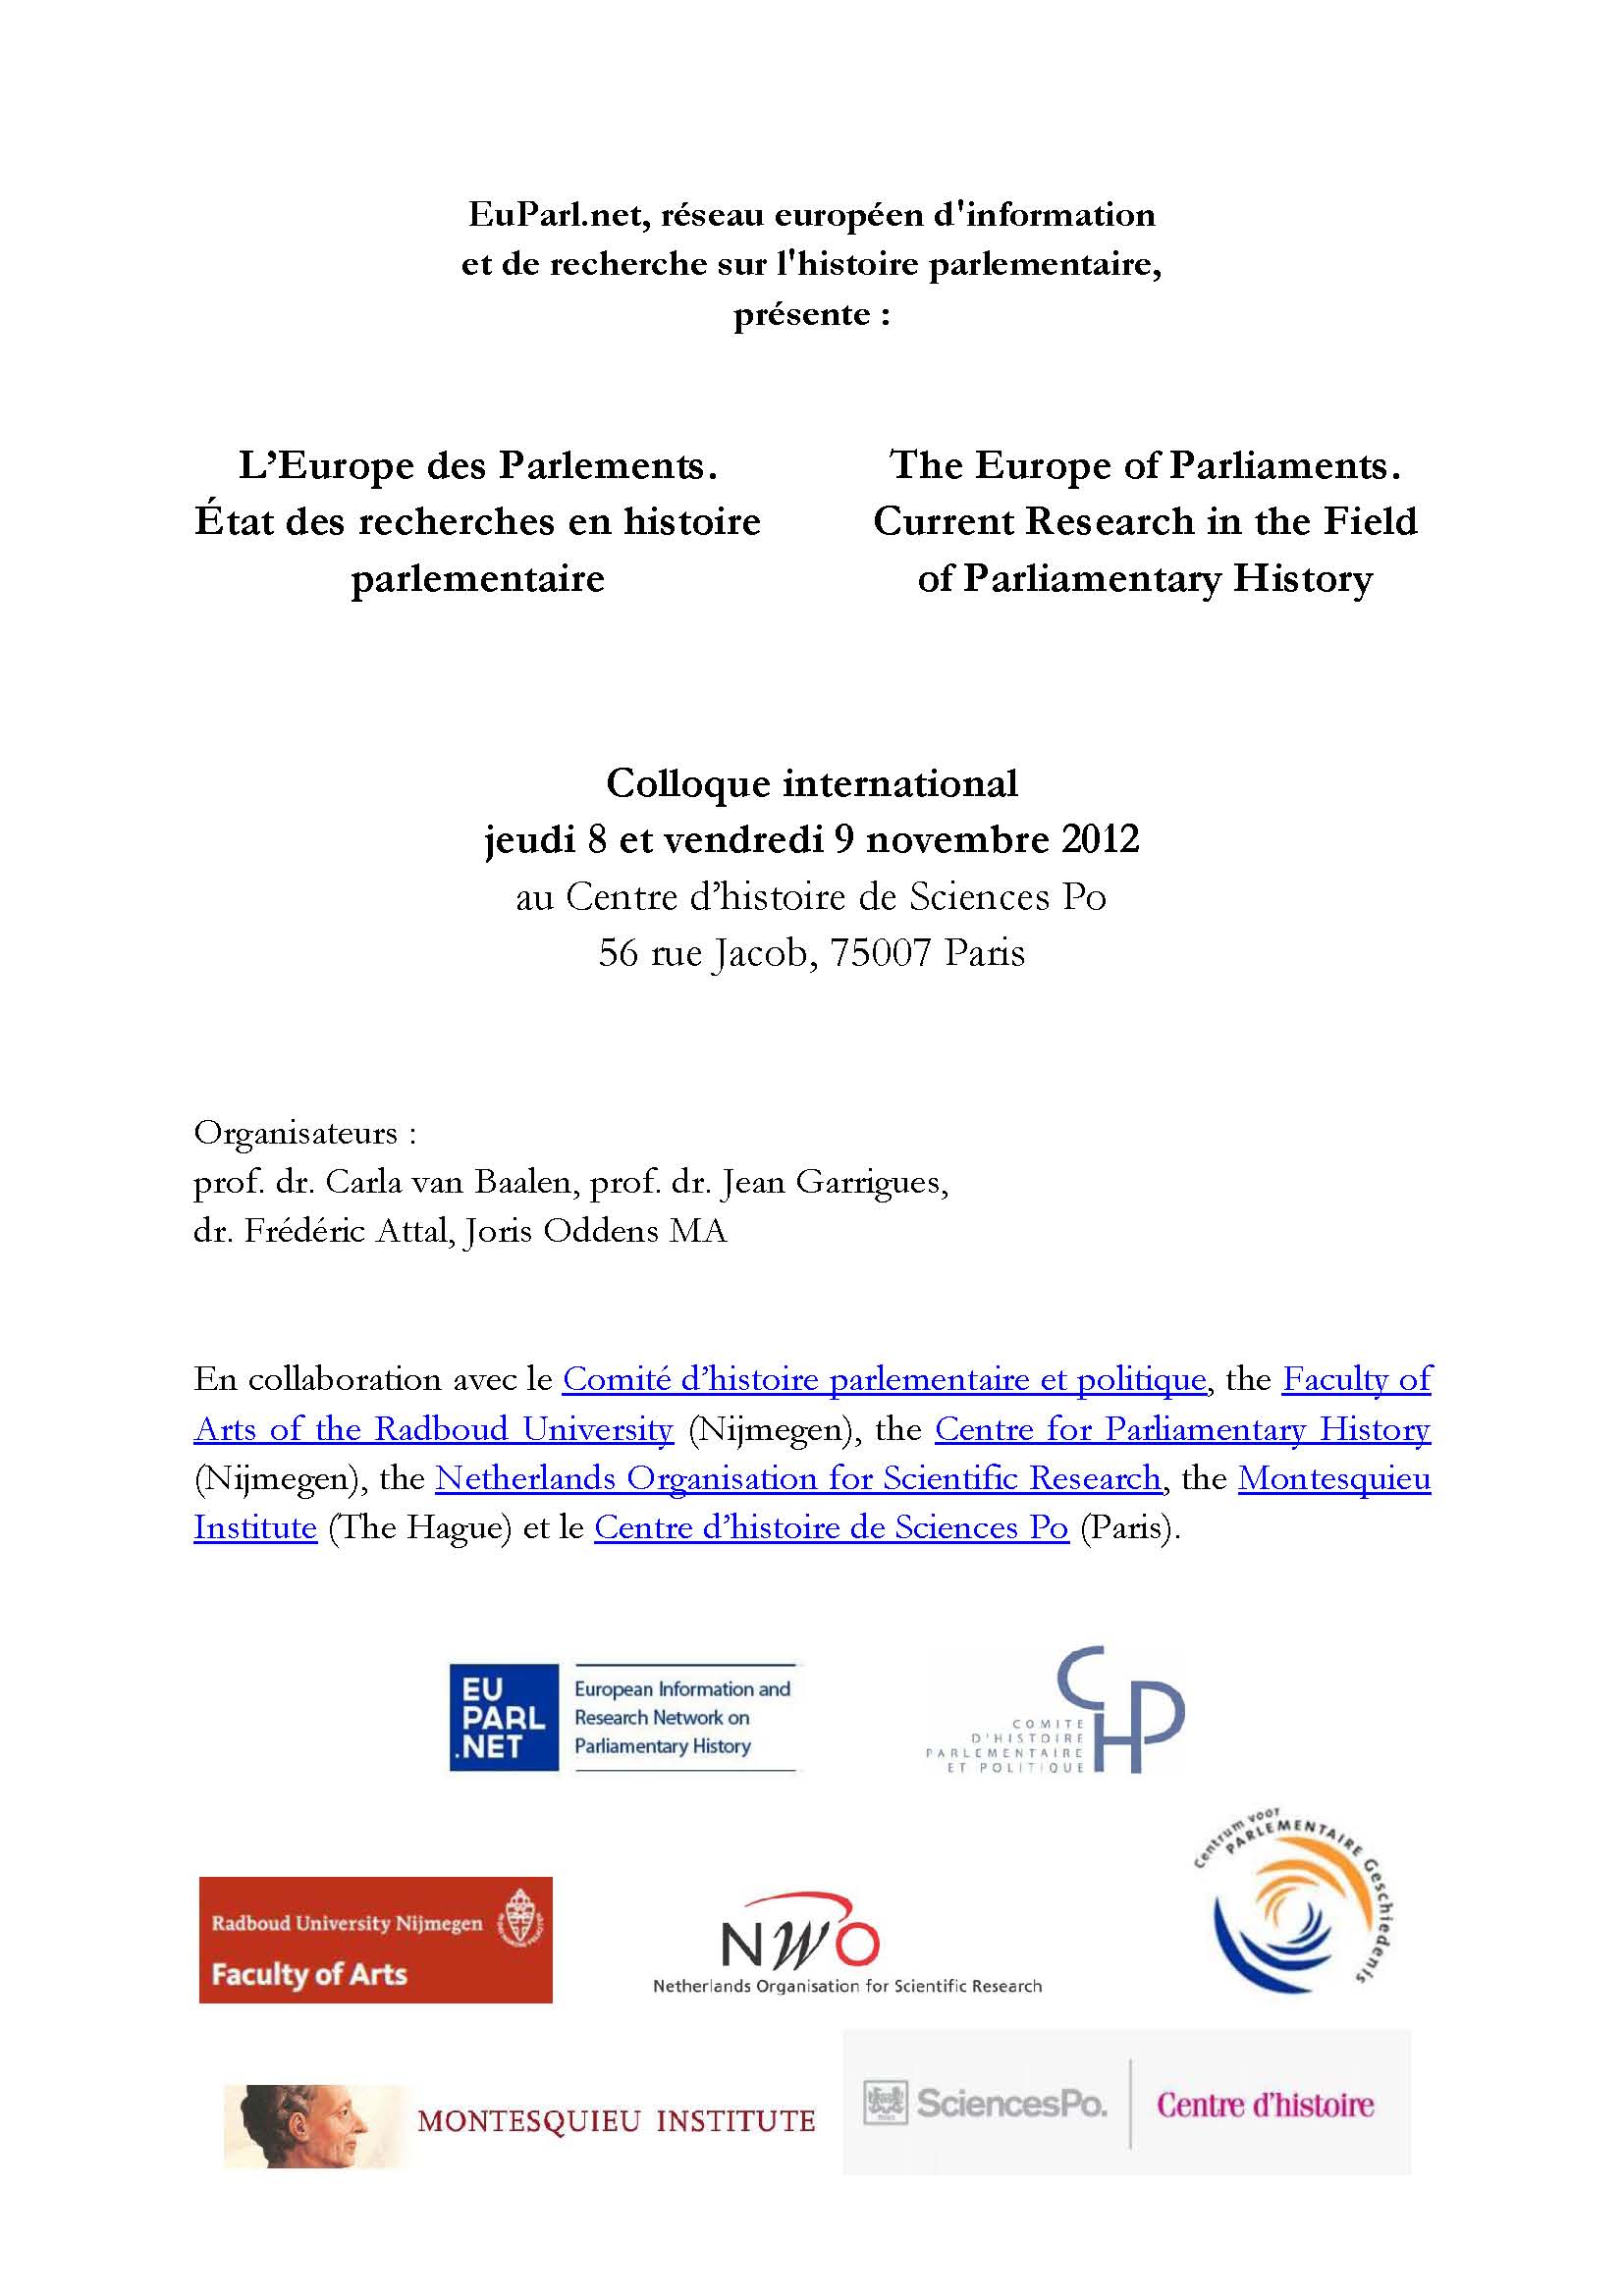 L’Europe des Parlements. Etat des recherches en histoire parlementaire